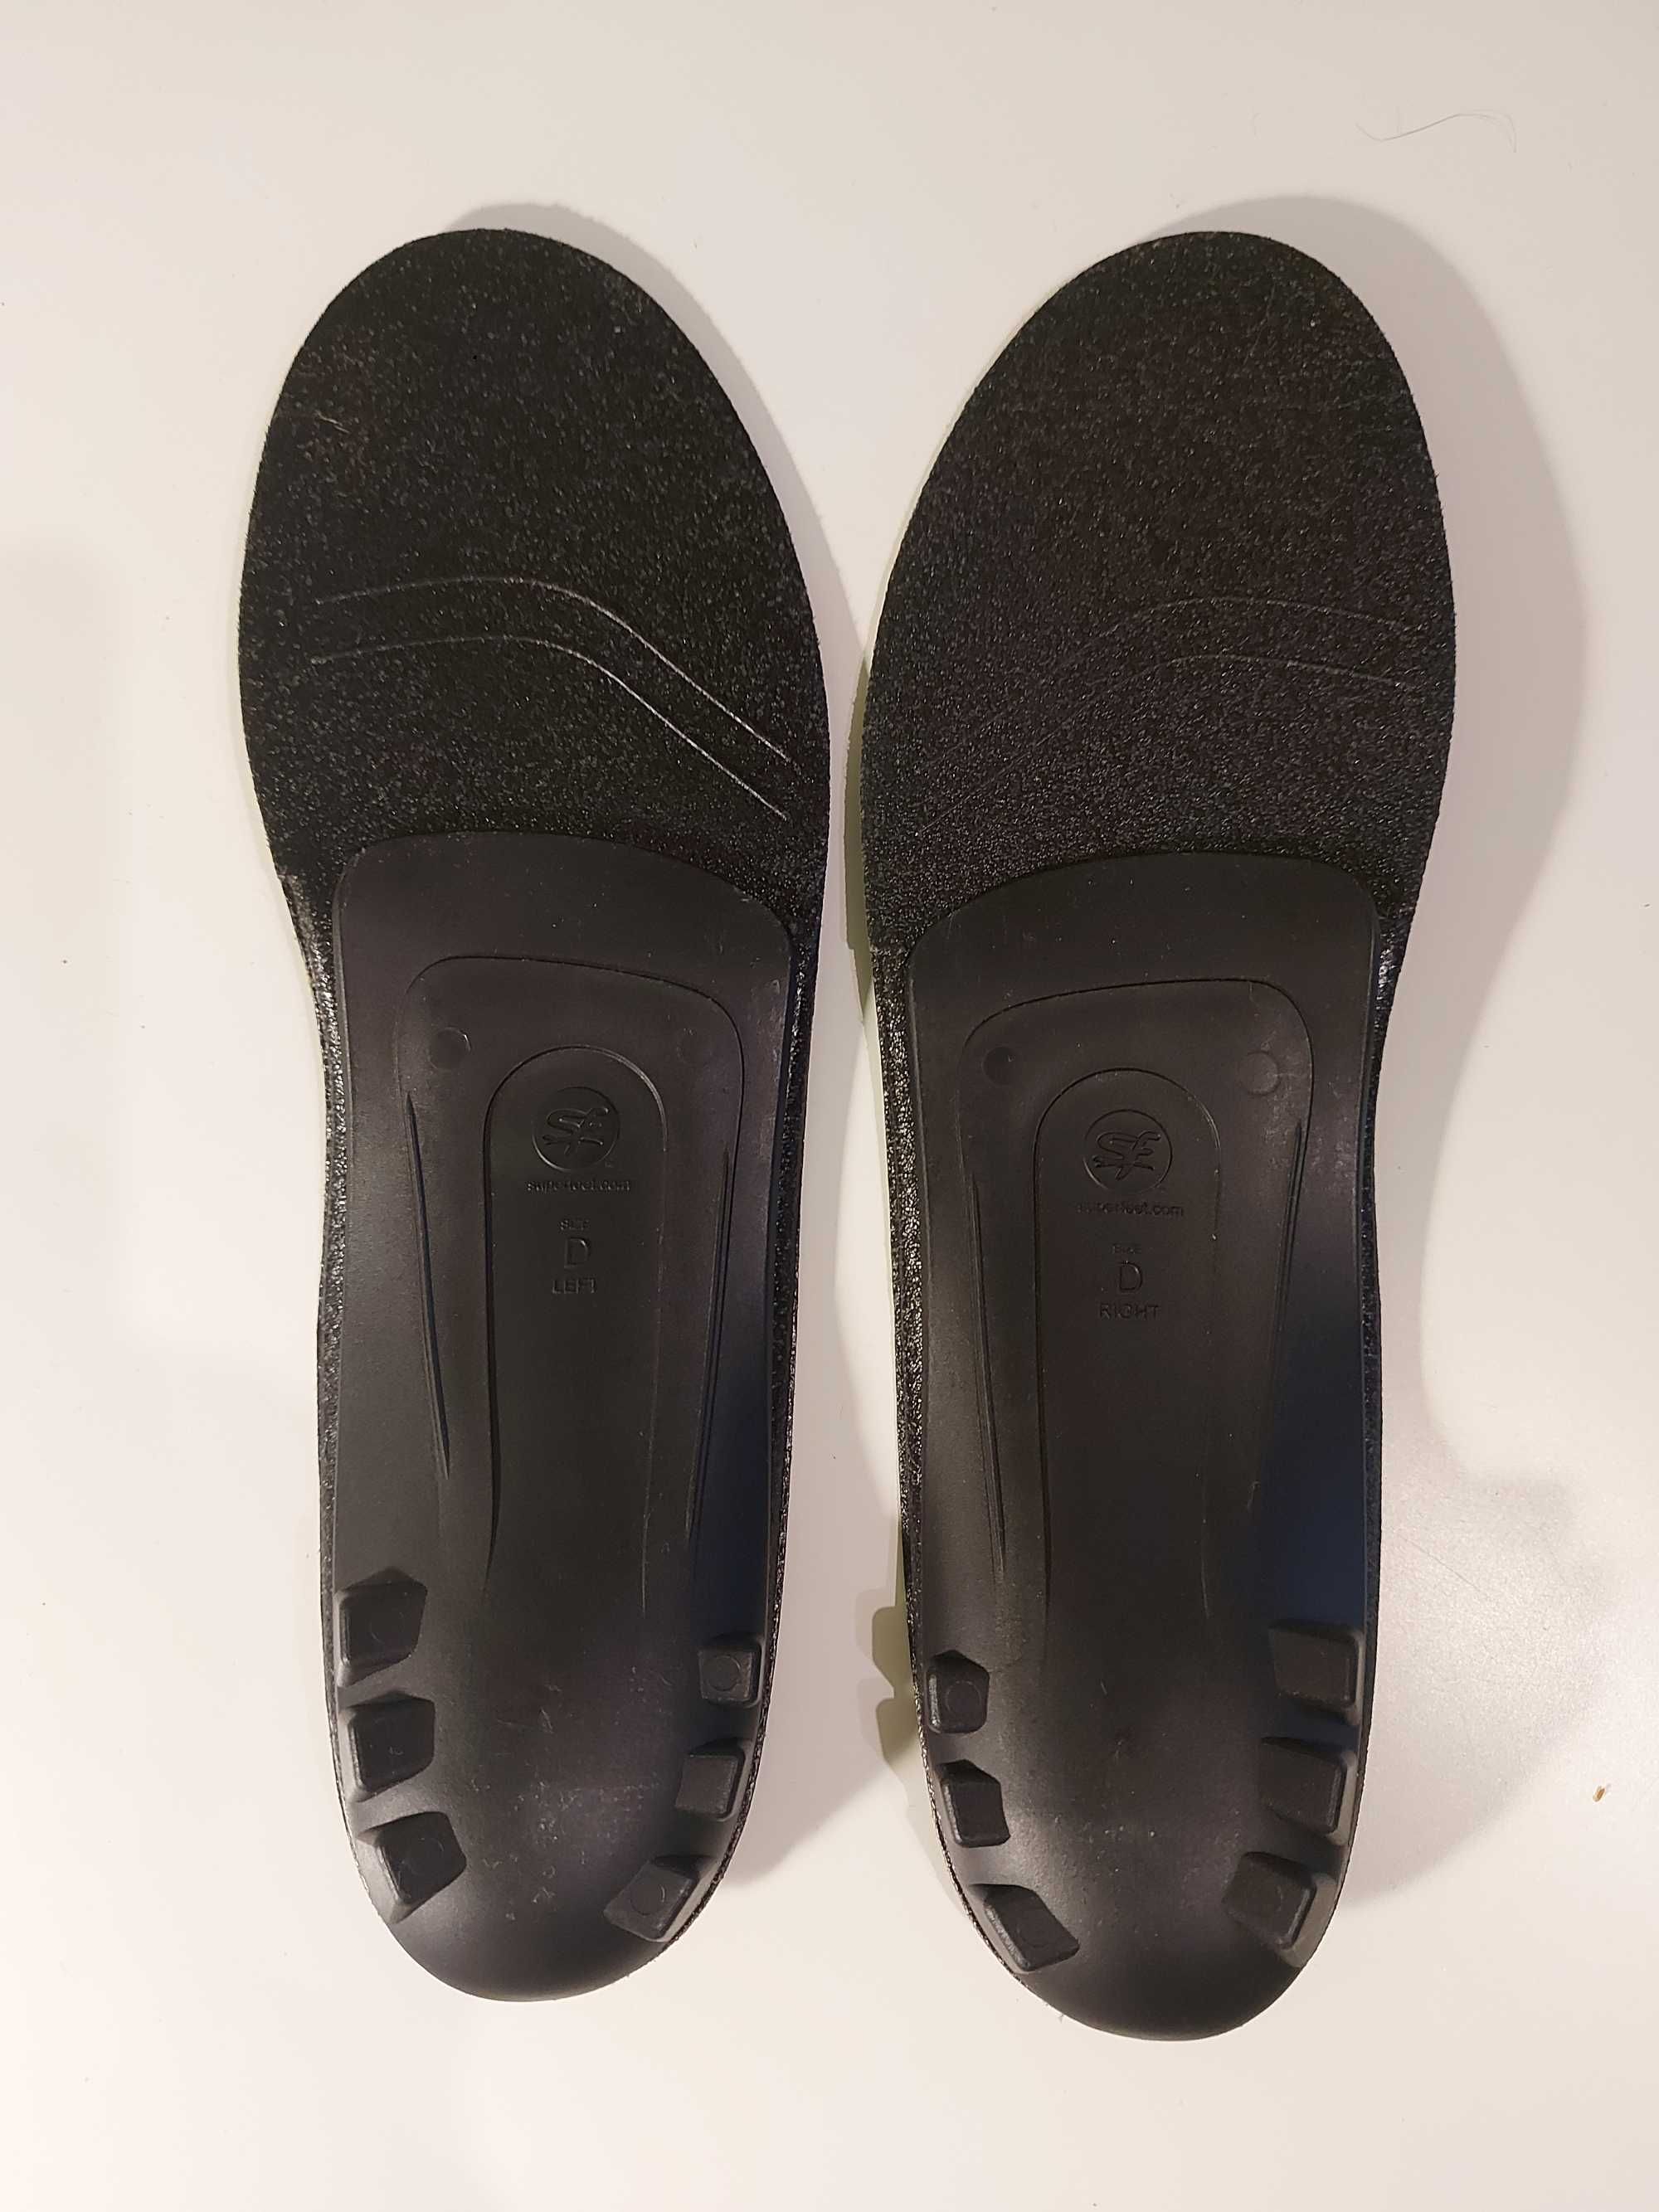 Wkładki do butów Superfeet black czarne rozmiar D